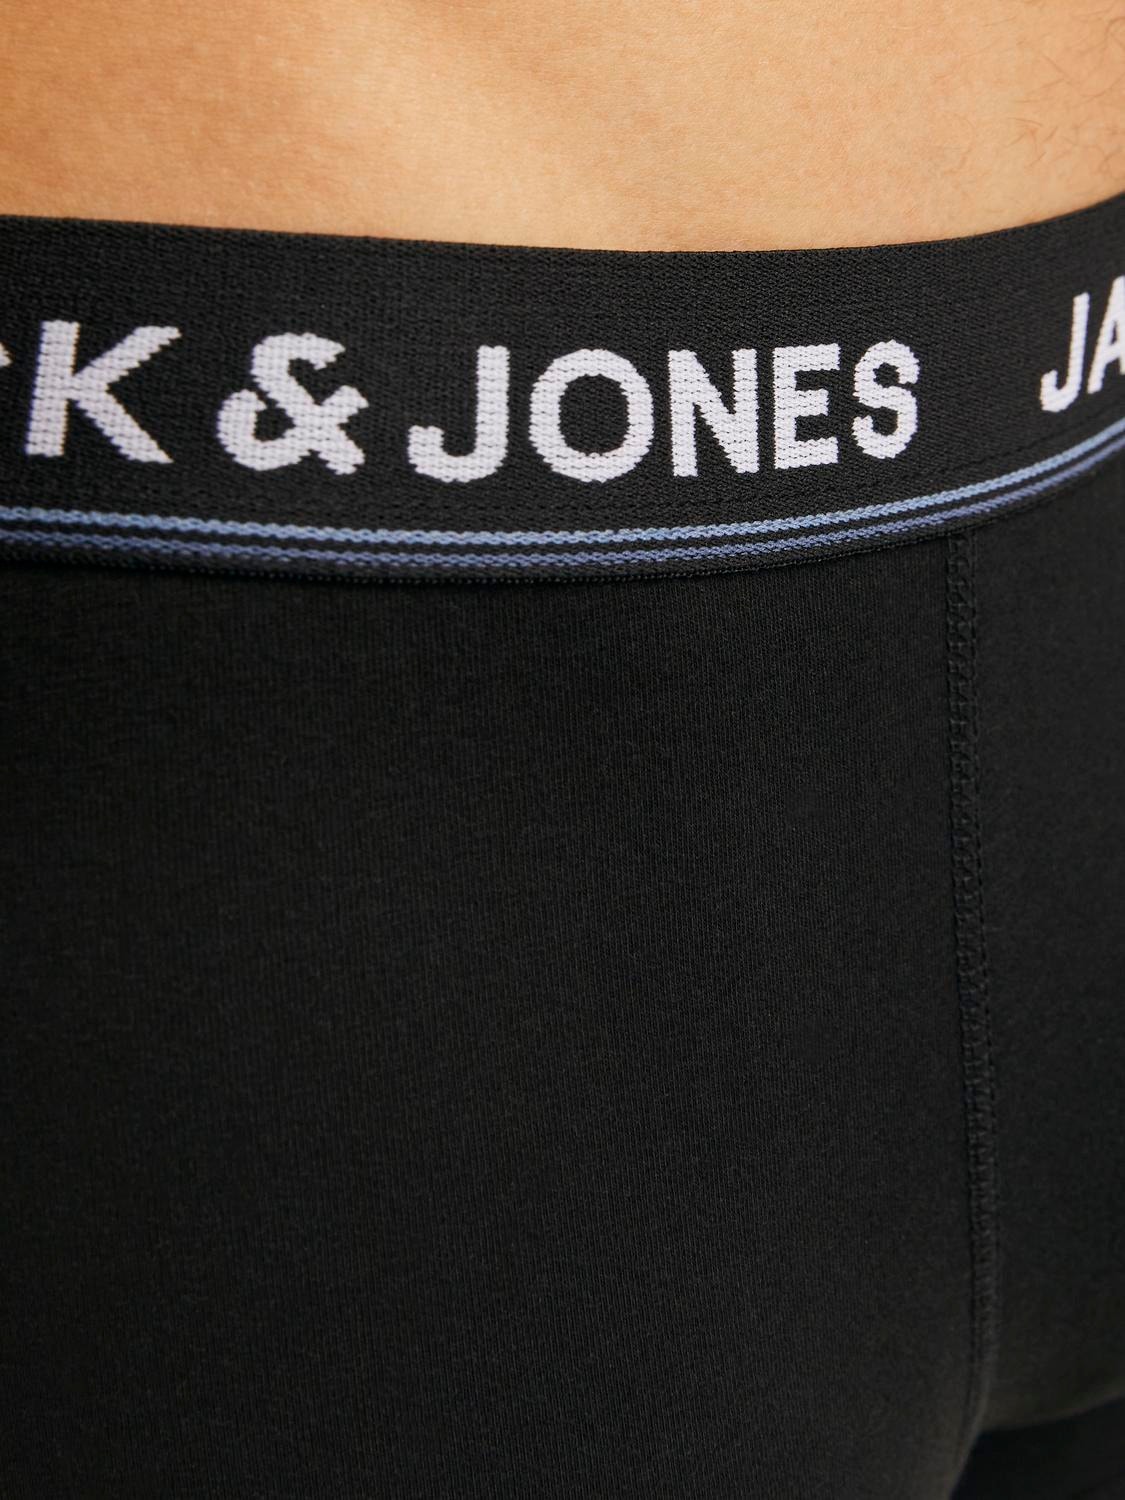 Jack & Jones 5-pakkainen Alushousut -Black - 12265503